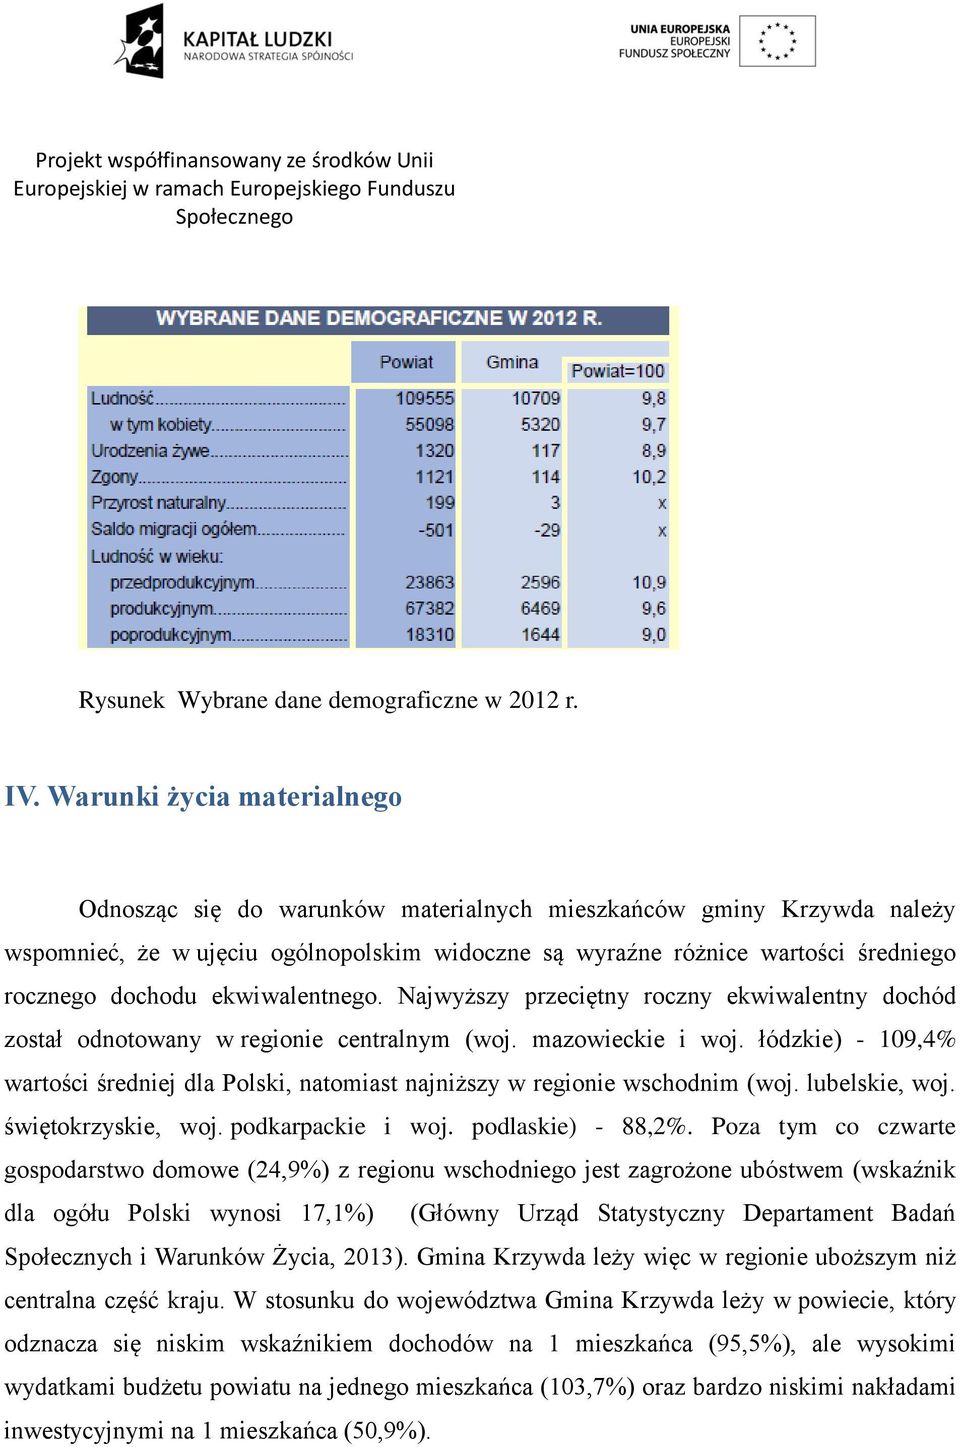 ekwiwalentnego. Najwyższy przeciętny roczny ekwiwalentny dochód został odnotowany w regionie centralnym (woj. mazowieckie i woj.